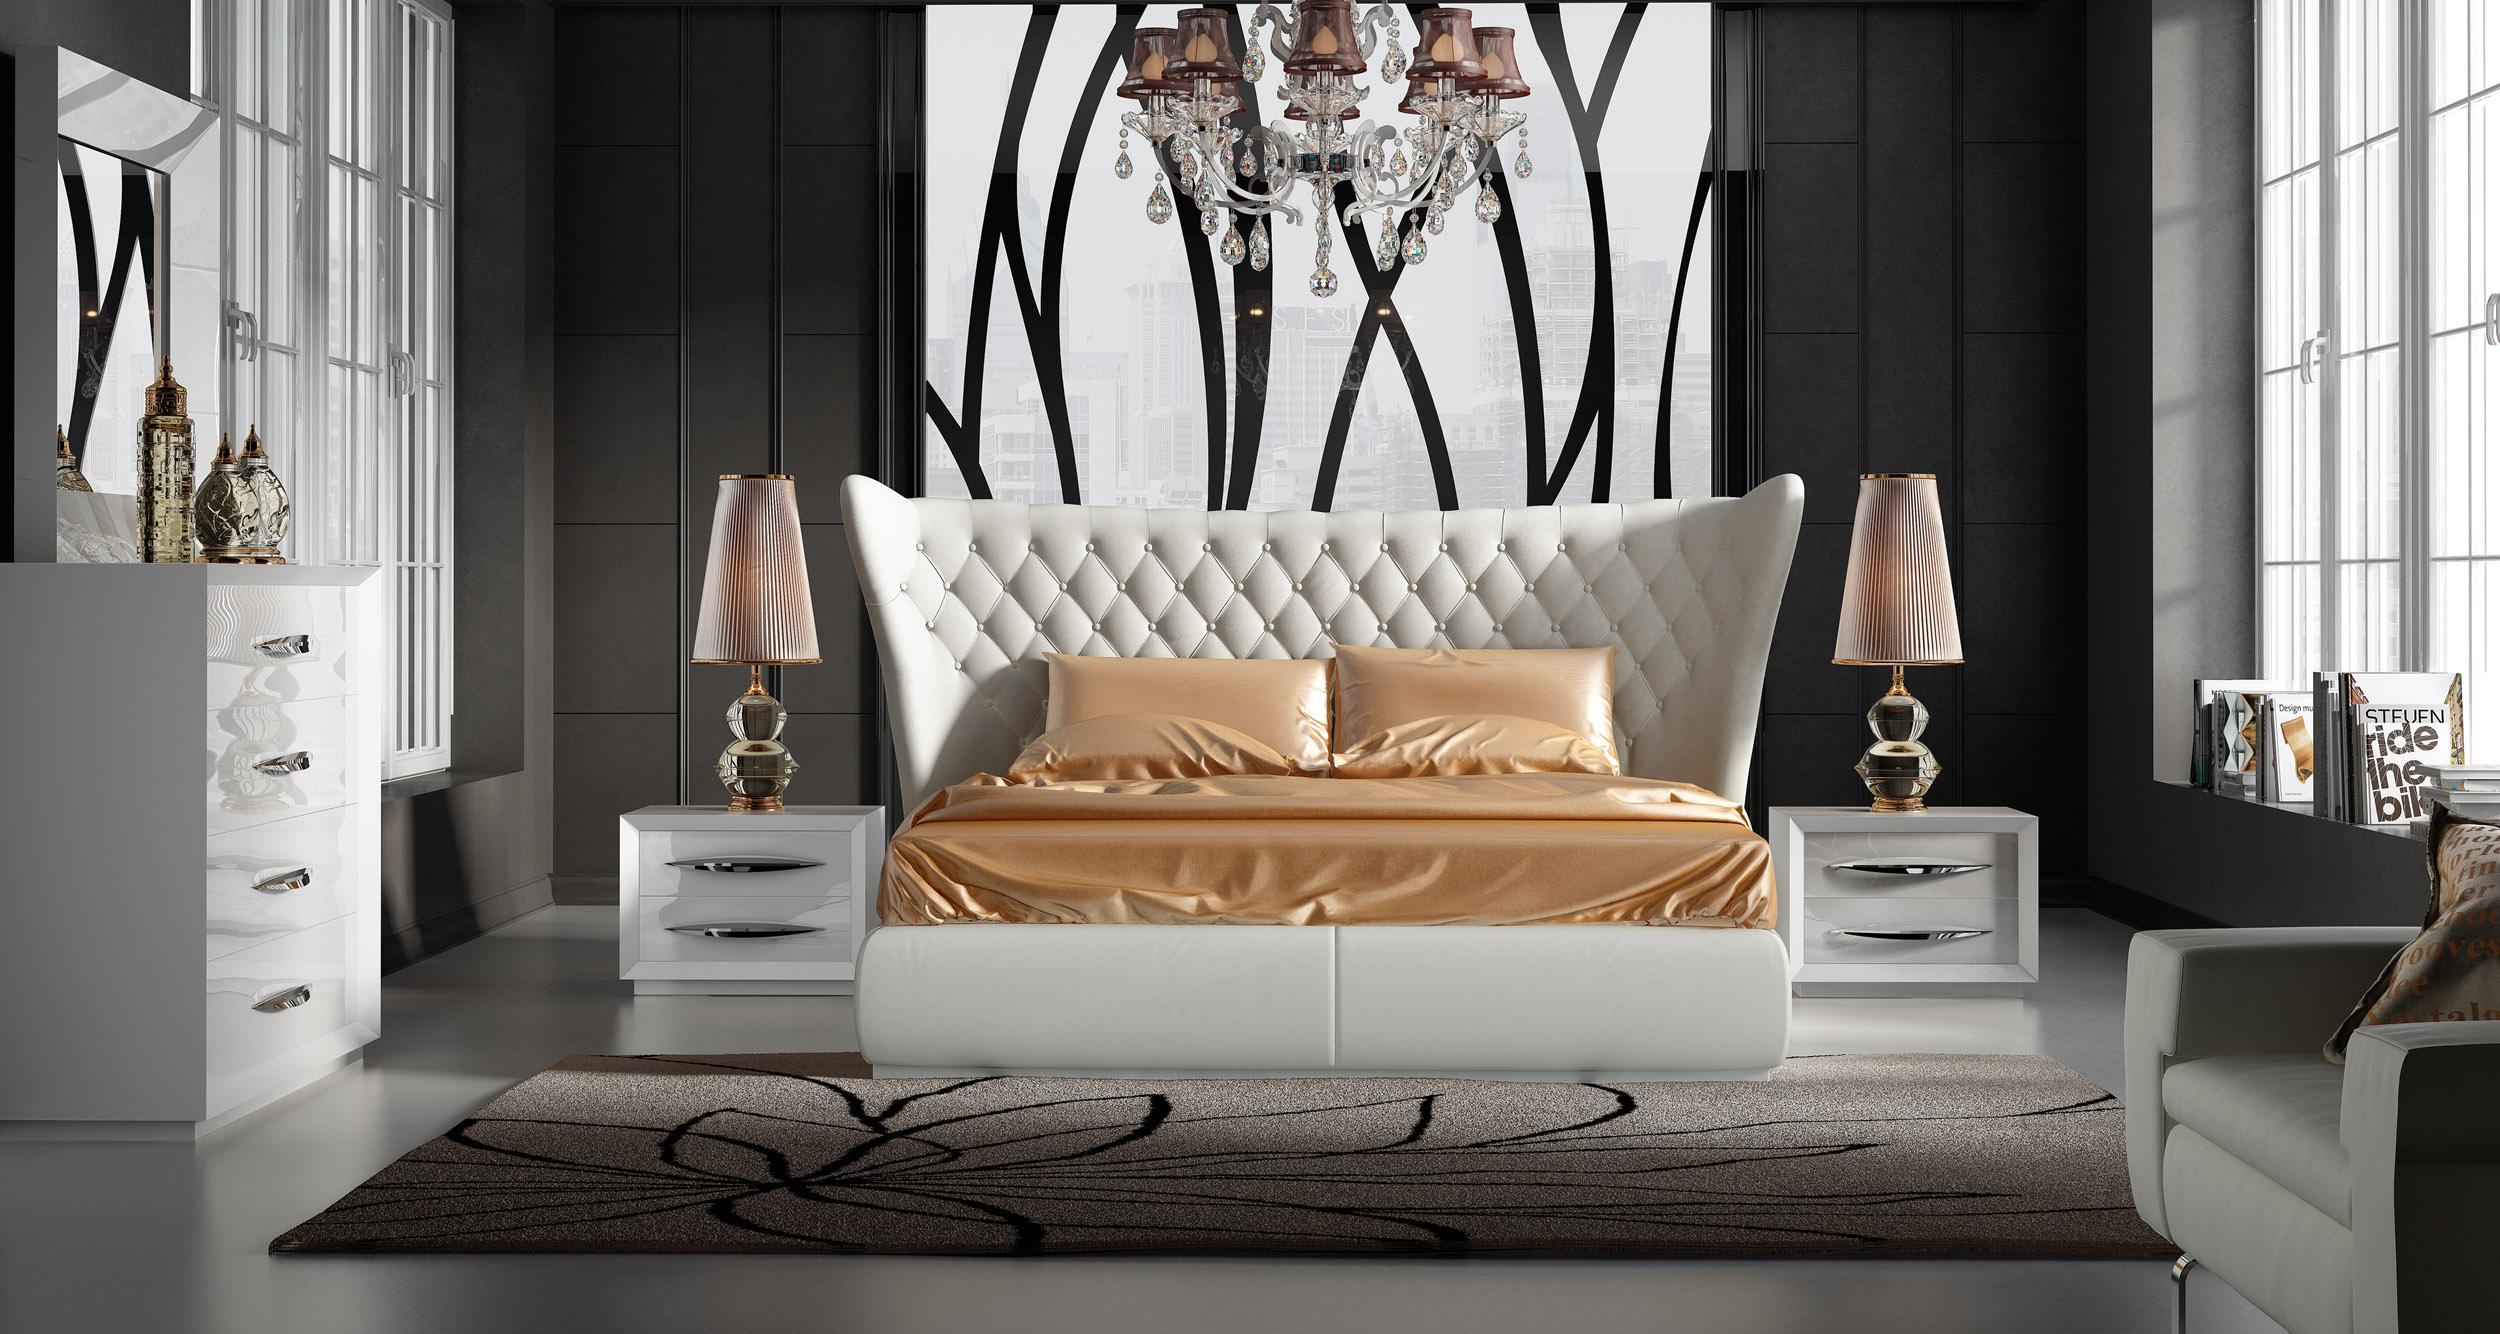 luxury bedroom furniture sydney